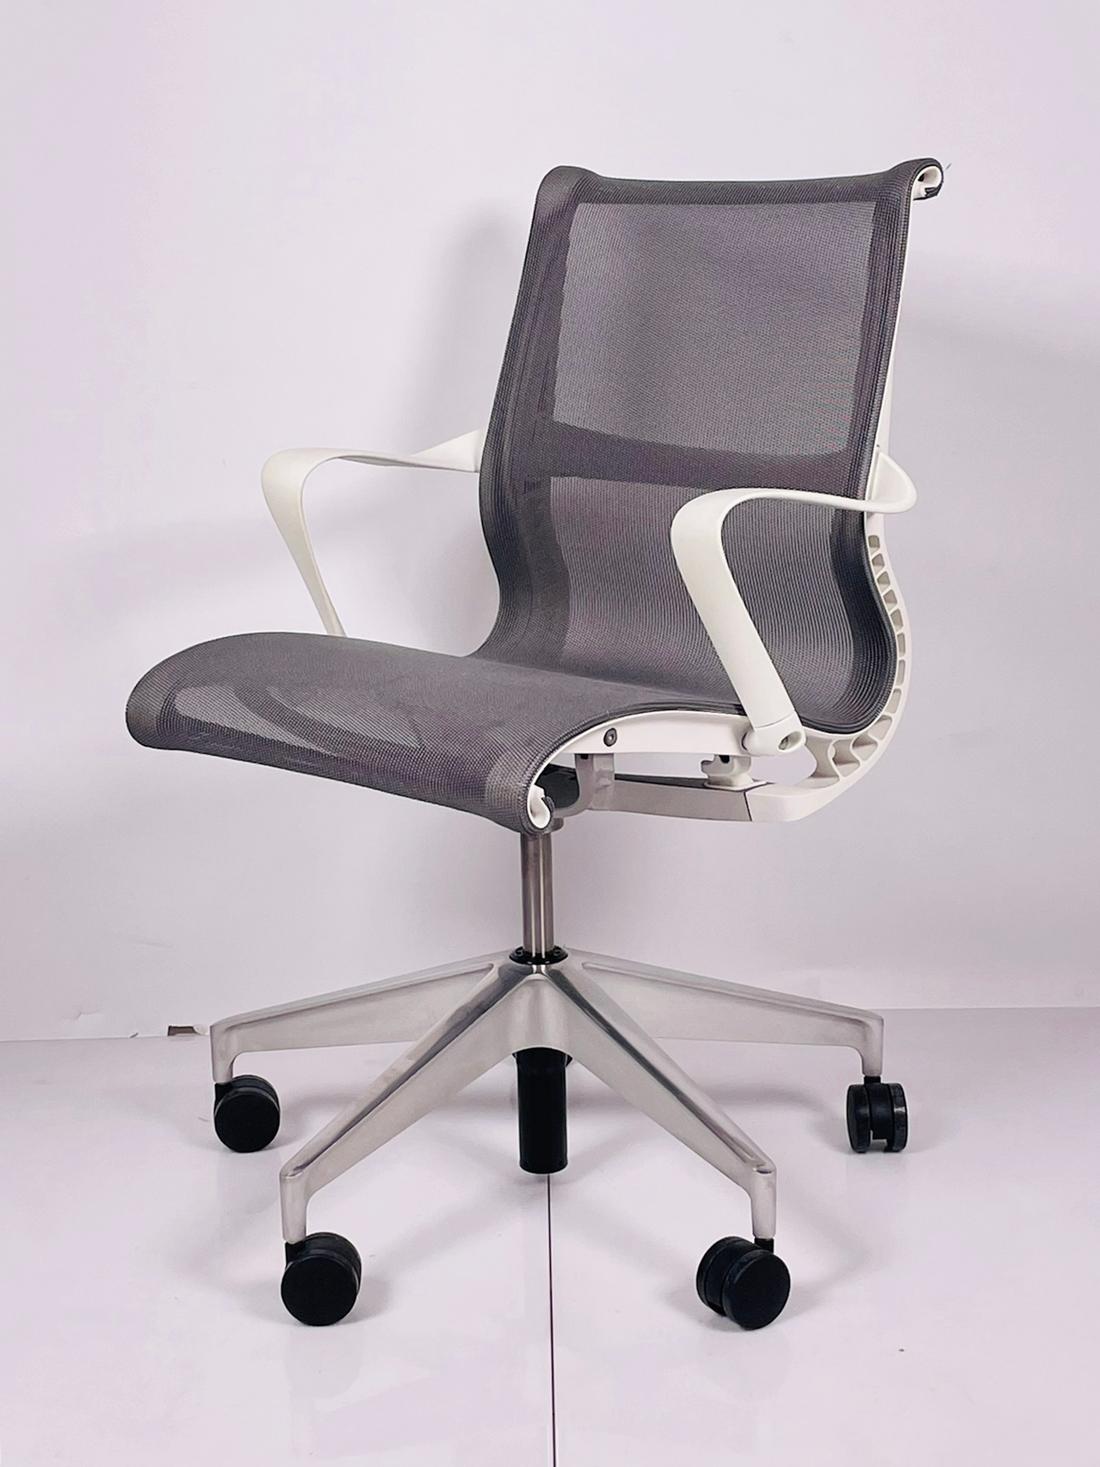 La chaise Setu définit la flexibilité, se déplaçant avec l'utilisateur, avec une esthétique épurée qui s'adapte à presque tous les espaces de la maison ou du bureau. Ce n'est pas un hasard si cette chaise est conçue pour la santé du dos - Setu